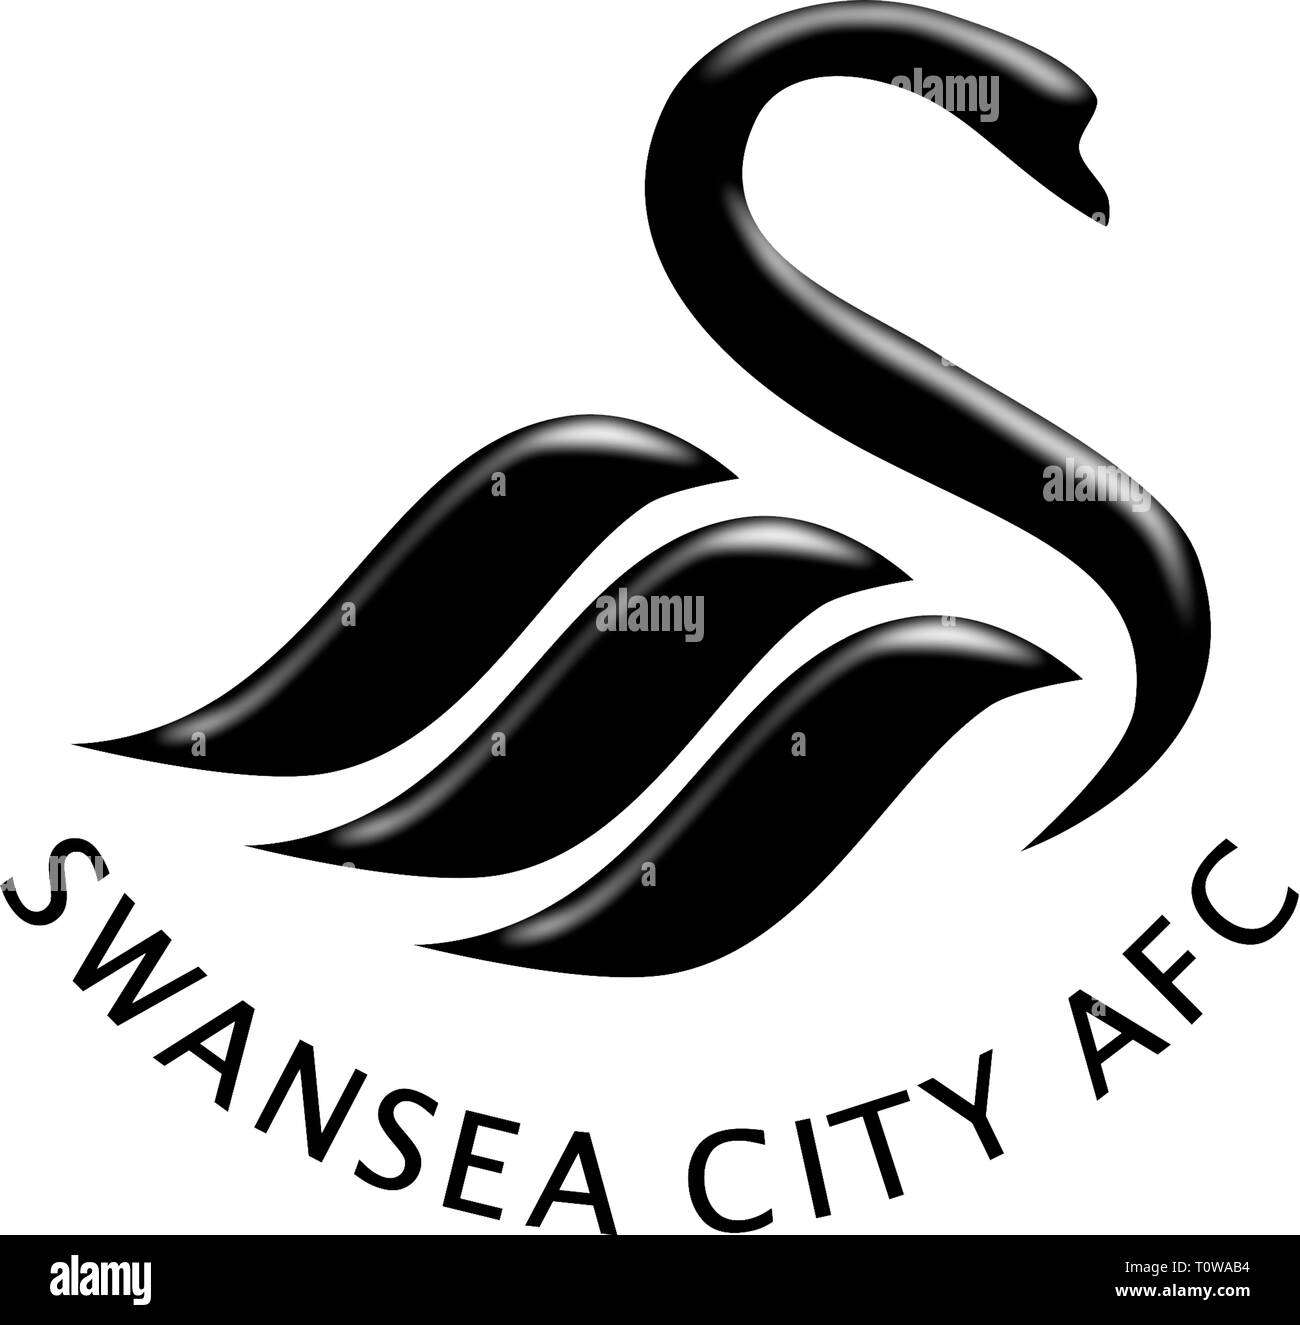 Logo der walisischen Nationalmannschaft Swansea City Association Football Club - Vereinigtes Königreich. Stockfoto